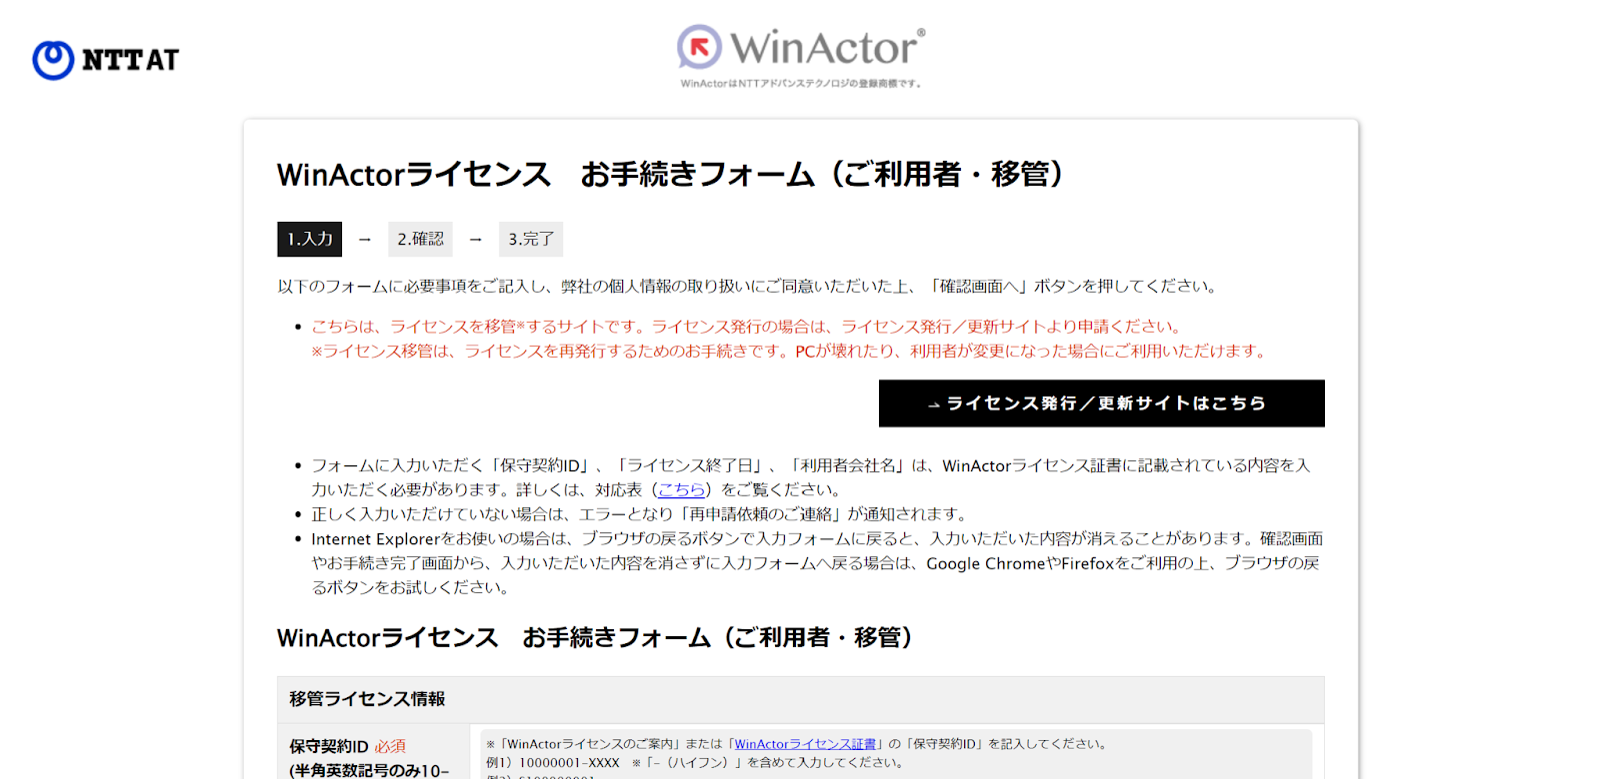 WinActor申請フォーム1の画像